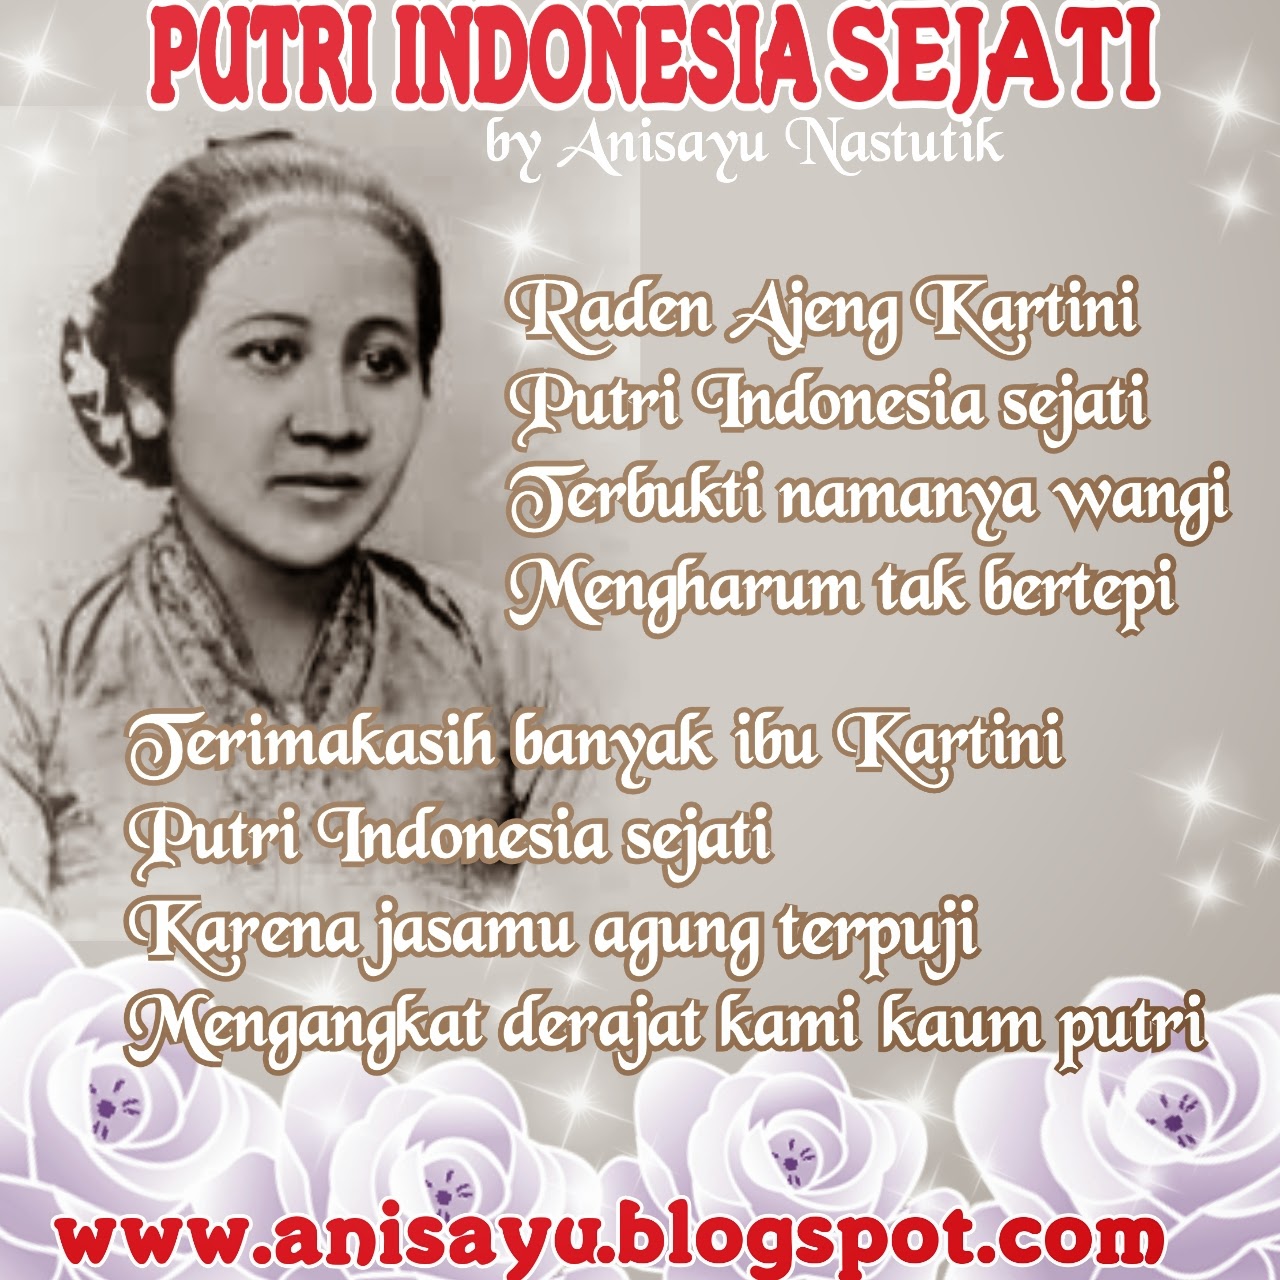 PUISI CINTA BY ANISAYU: Puisi Hari RA Kartini - Putri 